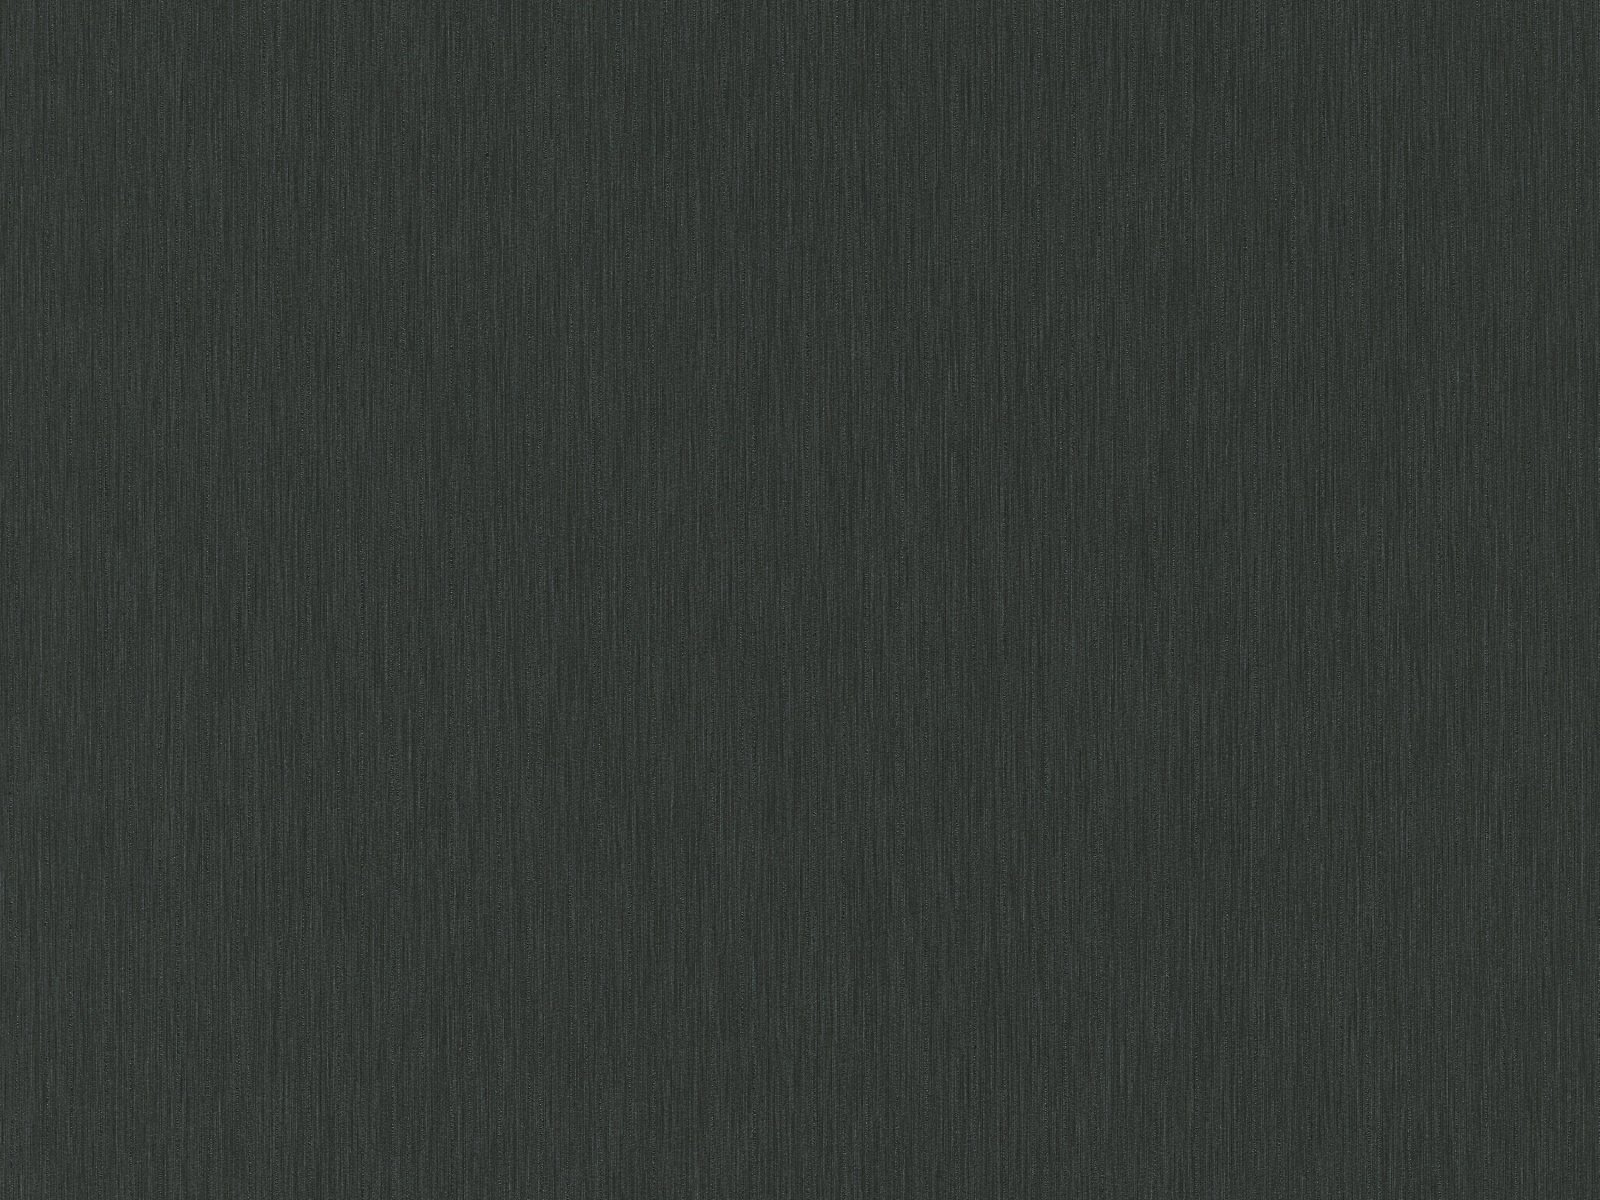 Vliesová tapeta s jemnou textilnou štruktúrou s rafinovanými odleskami v čiernej farbe, ER-601658